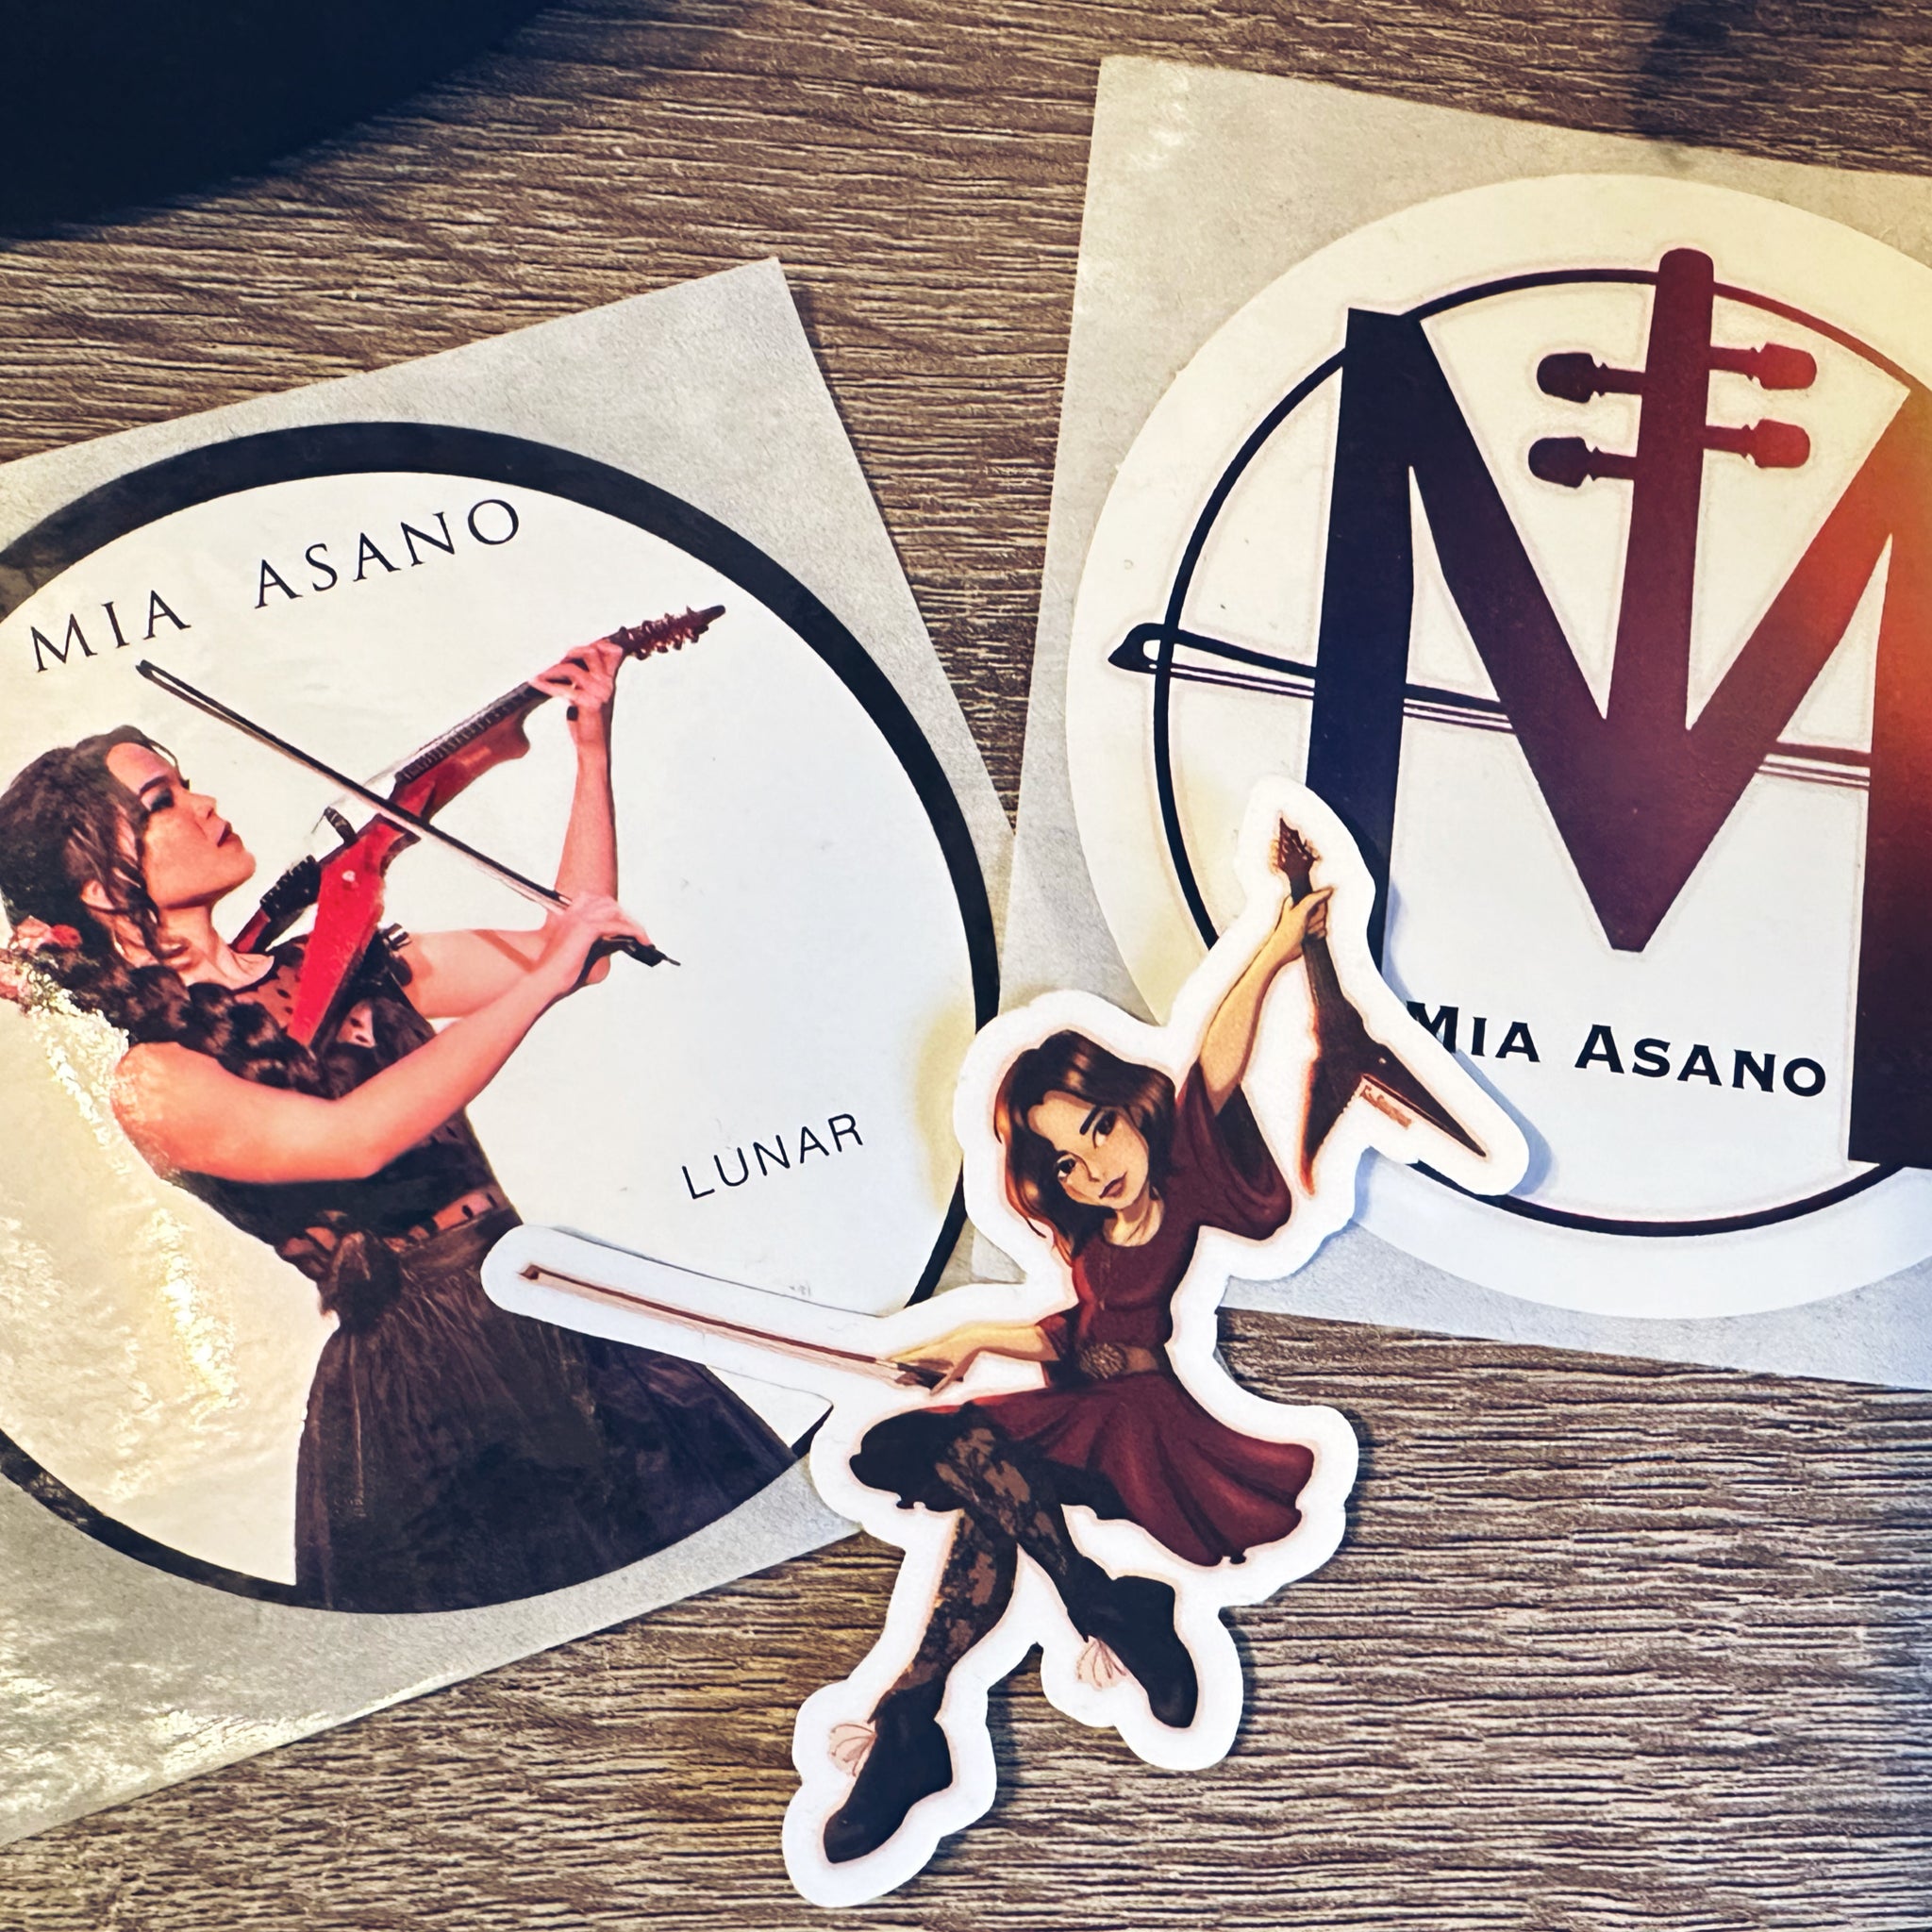 Mia Asano stickers are finally here!